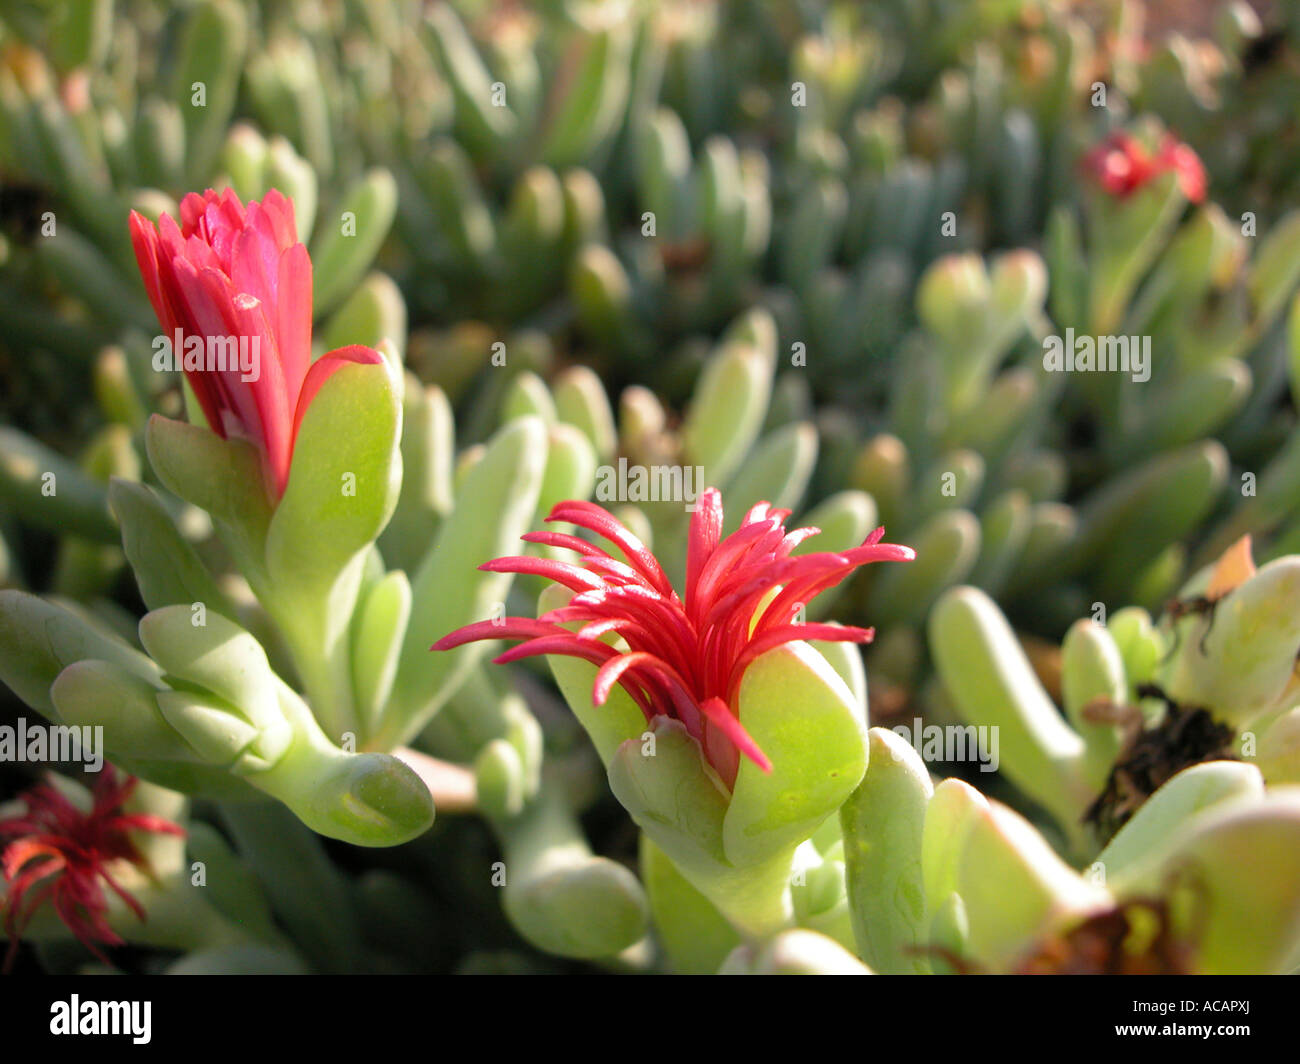 Desert plants in bloom Dahab, Sinai, Egypt Stock Photo